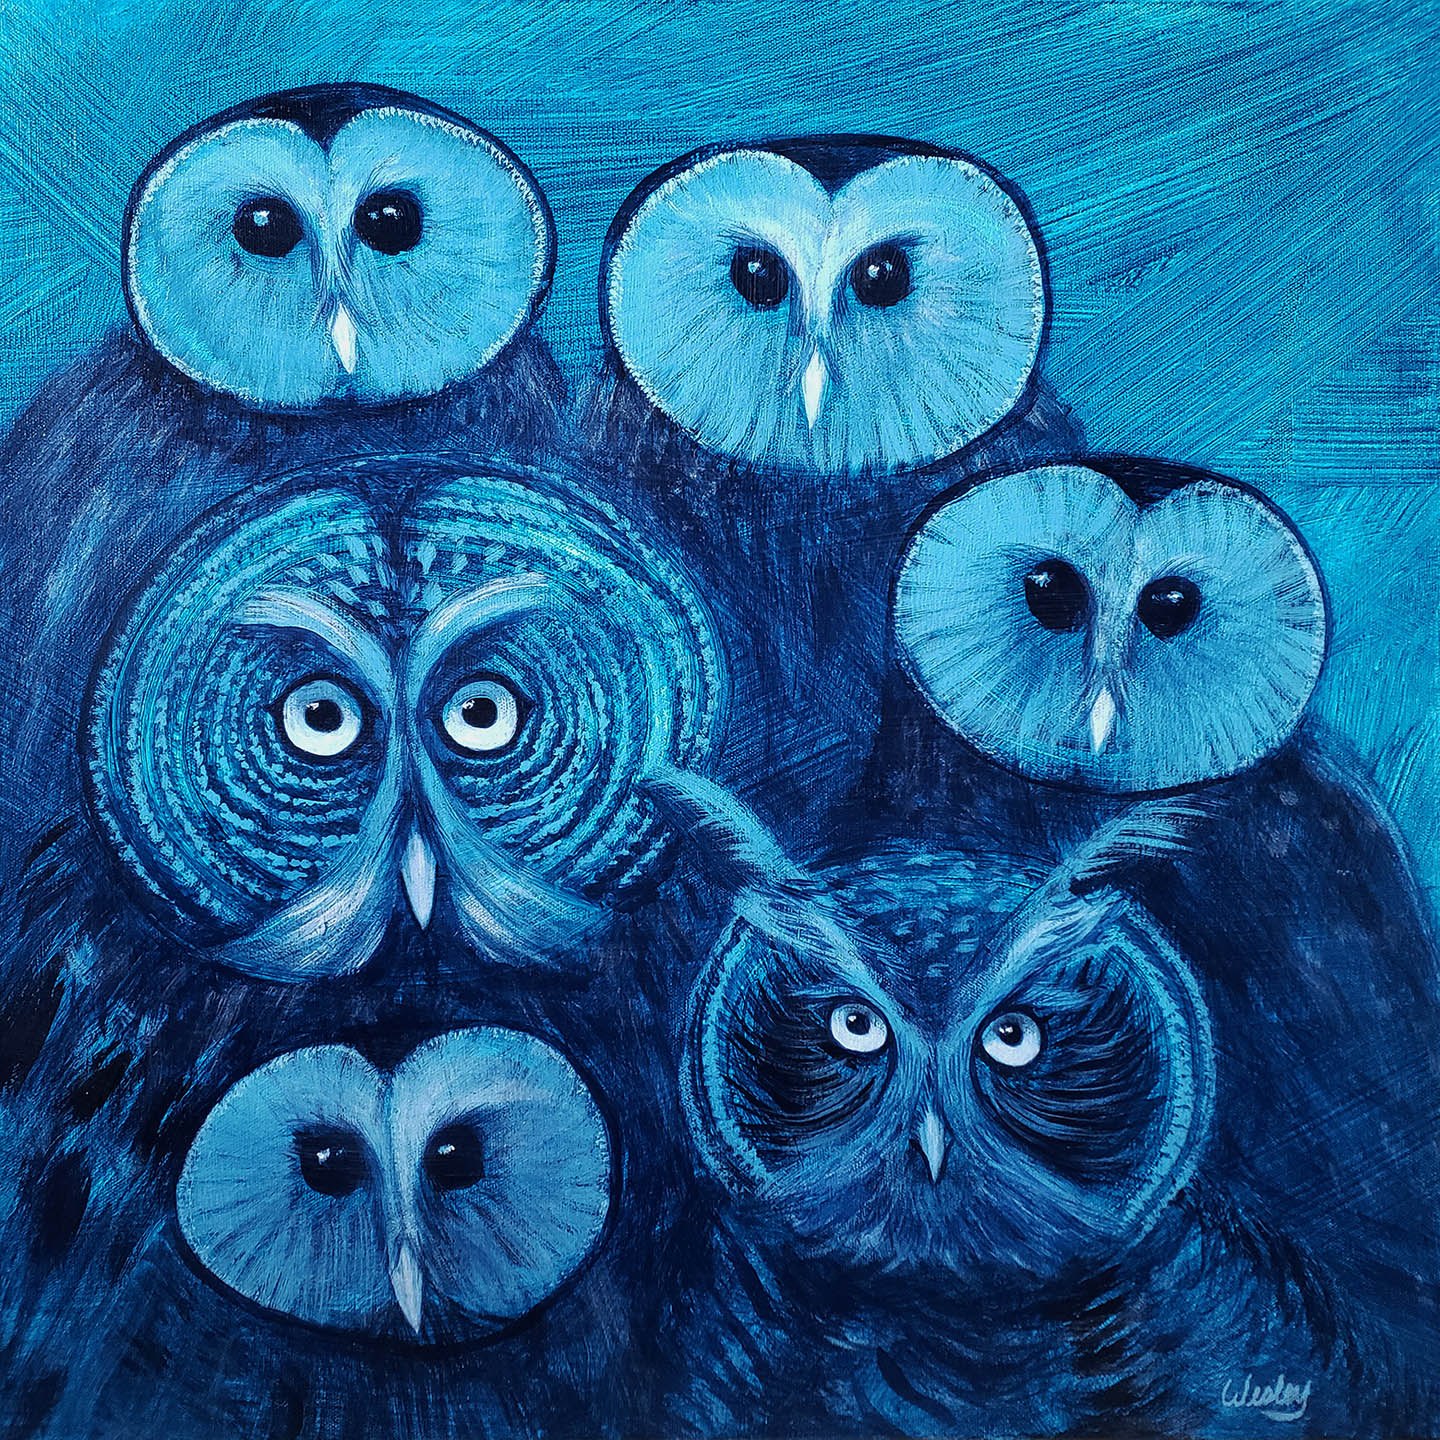 Six owls.